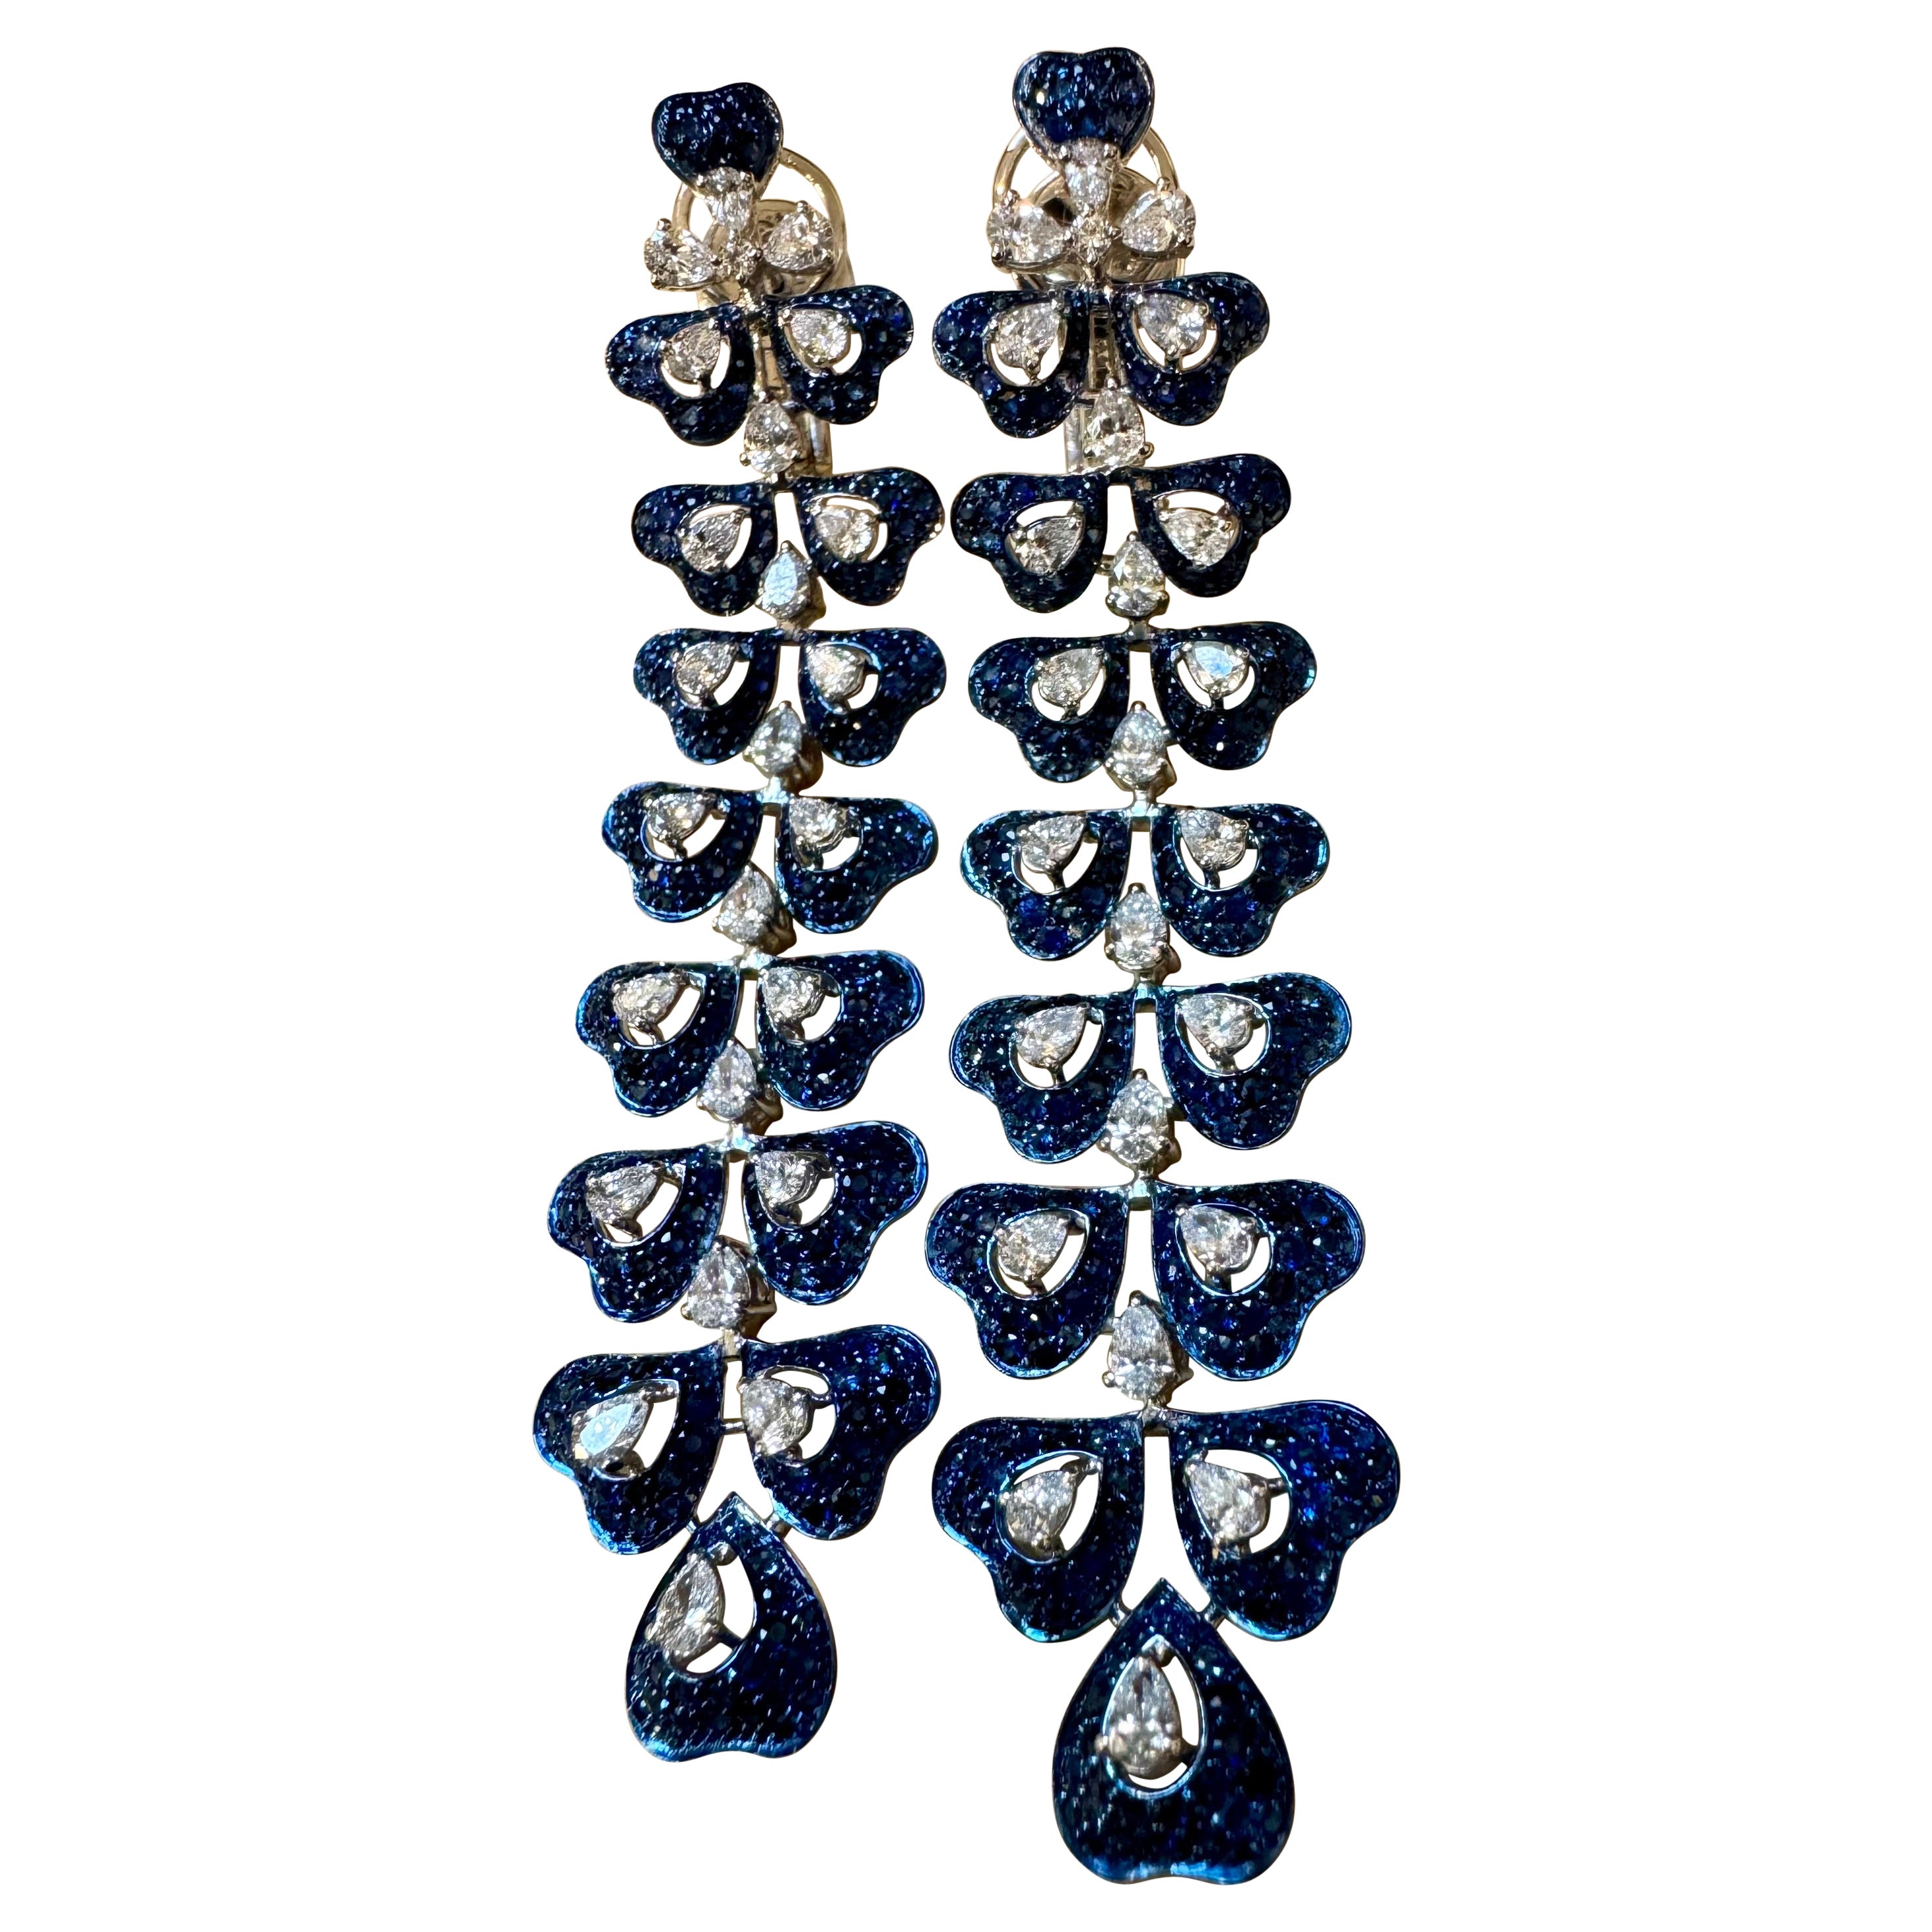  6 Ct Natural Blue Sapphire & 3 Ct Diamond hanging Earrings 18Kt White Gold 3" (Boucles d'oreilles pendantes en or blanc 18Kt) en vente